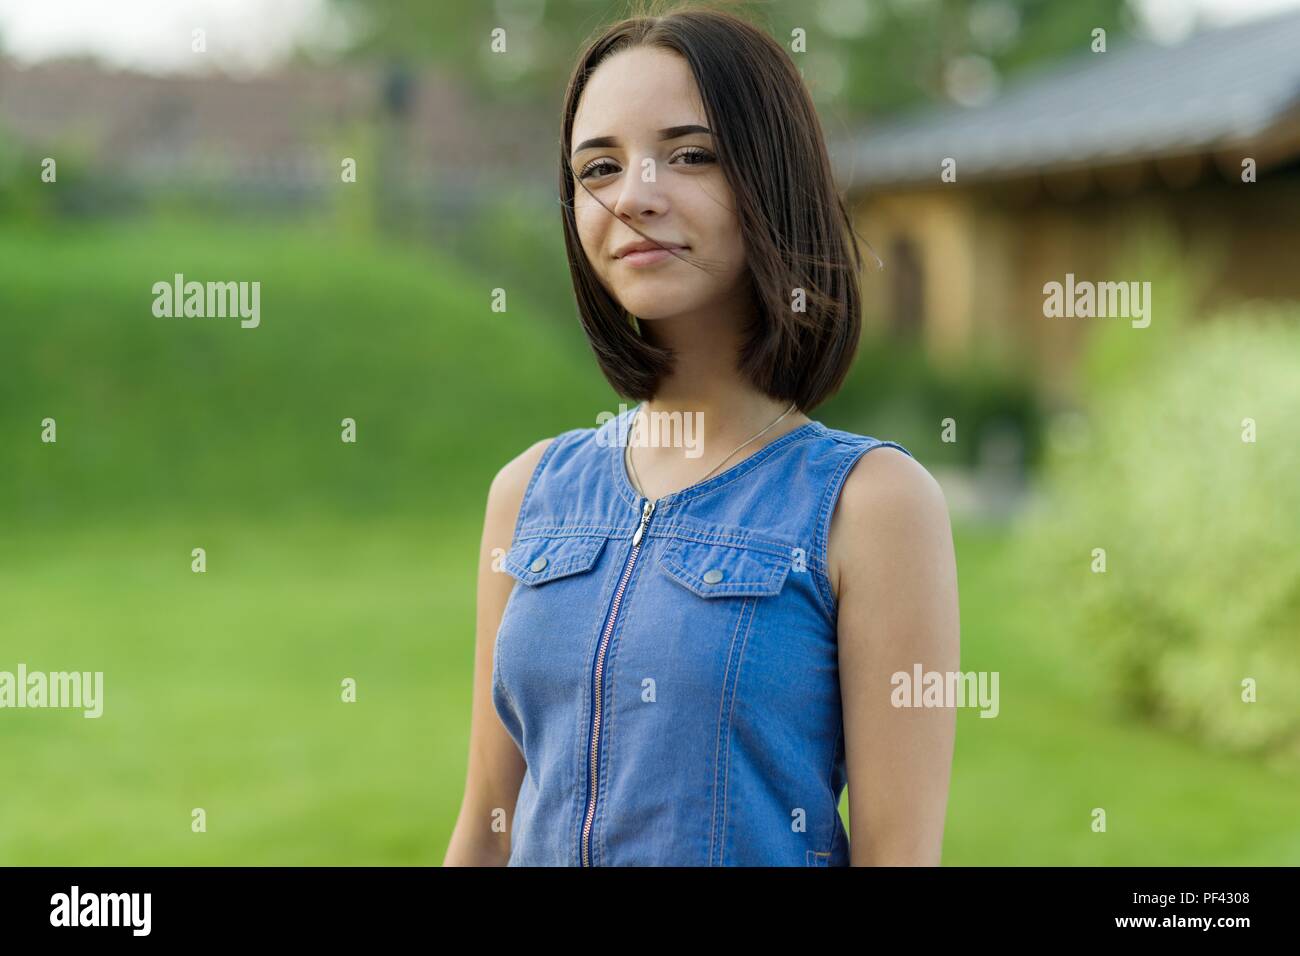 Portrait de plein air d'une jolie jeune fille de 16 ans Banque D'Images